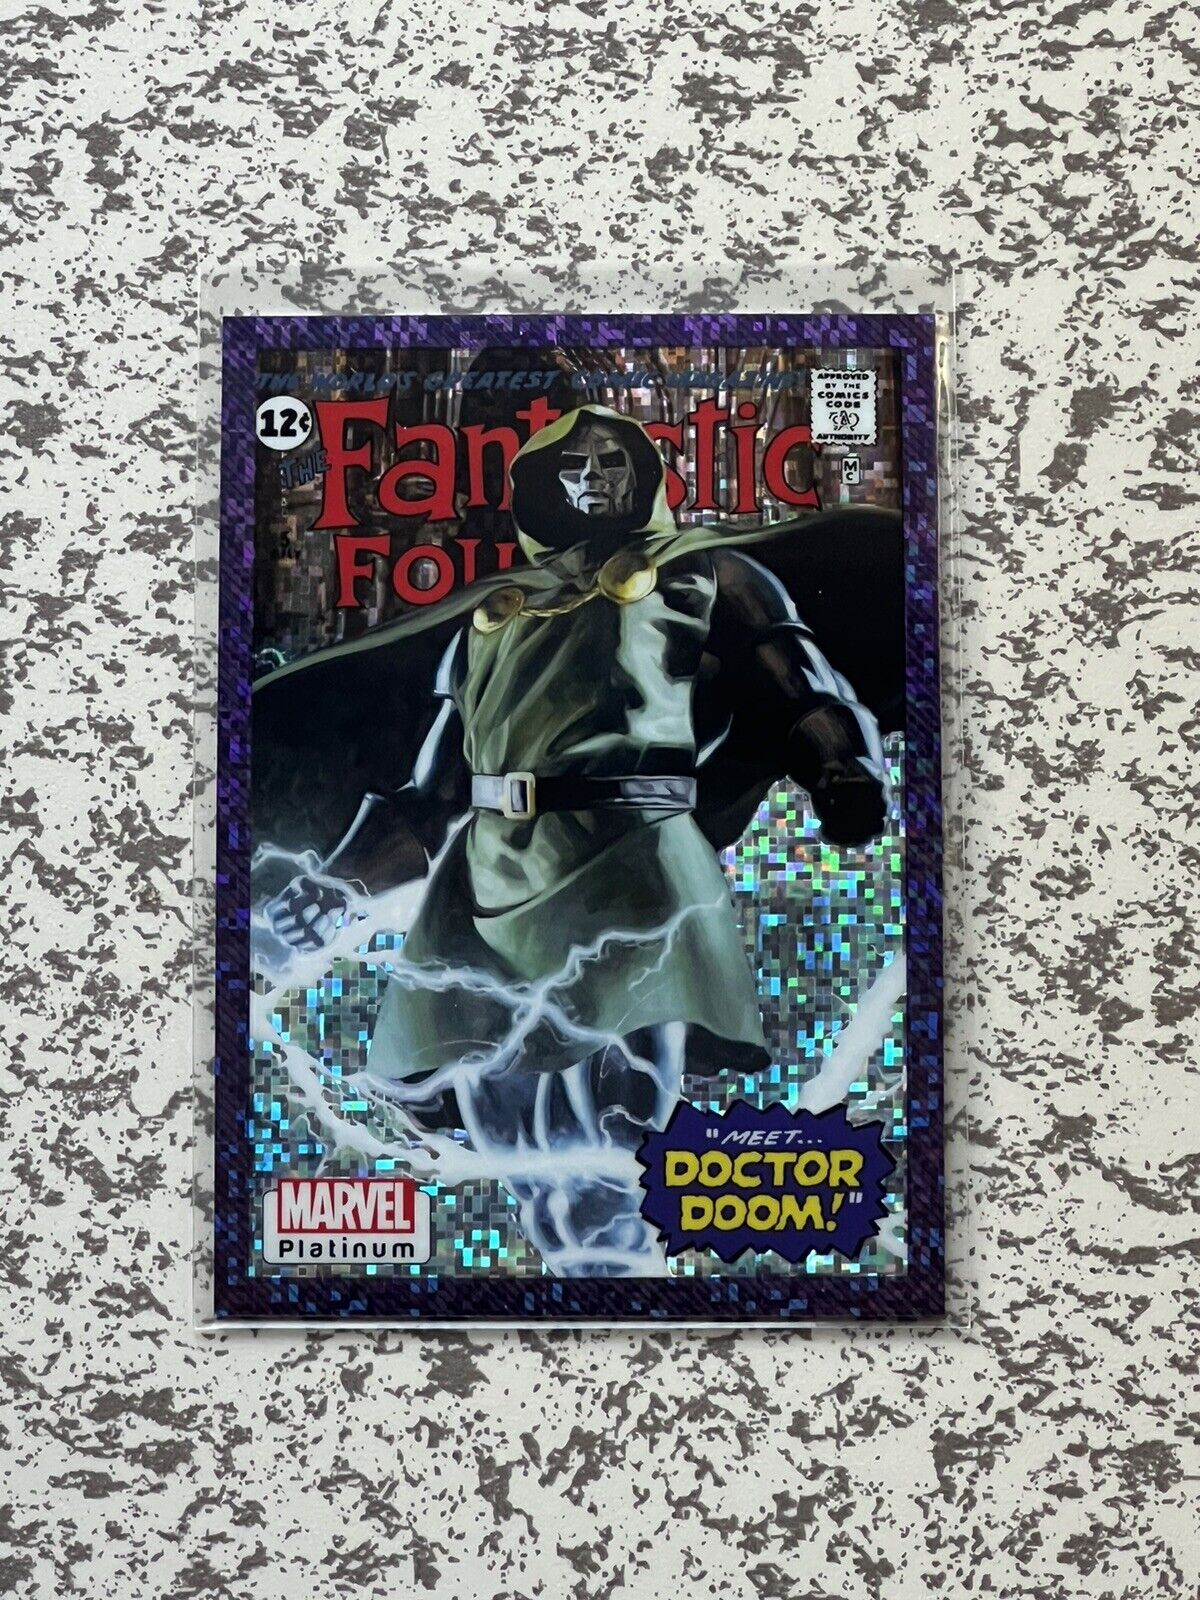 Upper Deck Marvel Platinum Doctor Doom Purple Pixel Cover Variant #27/35